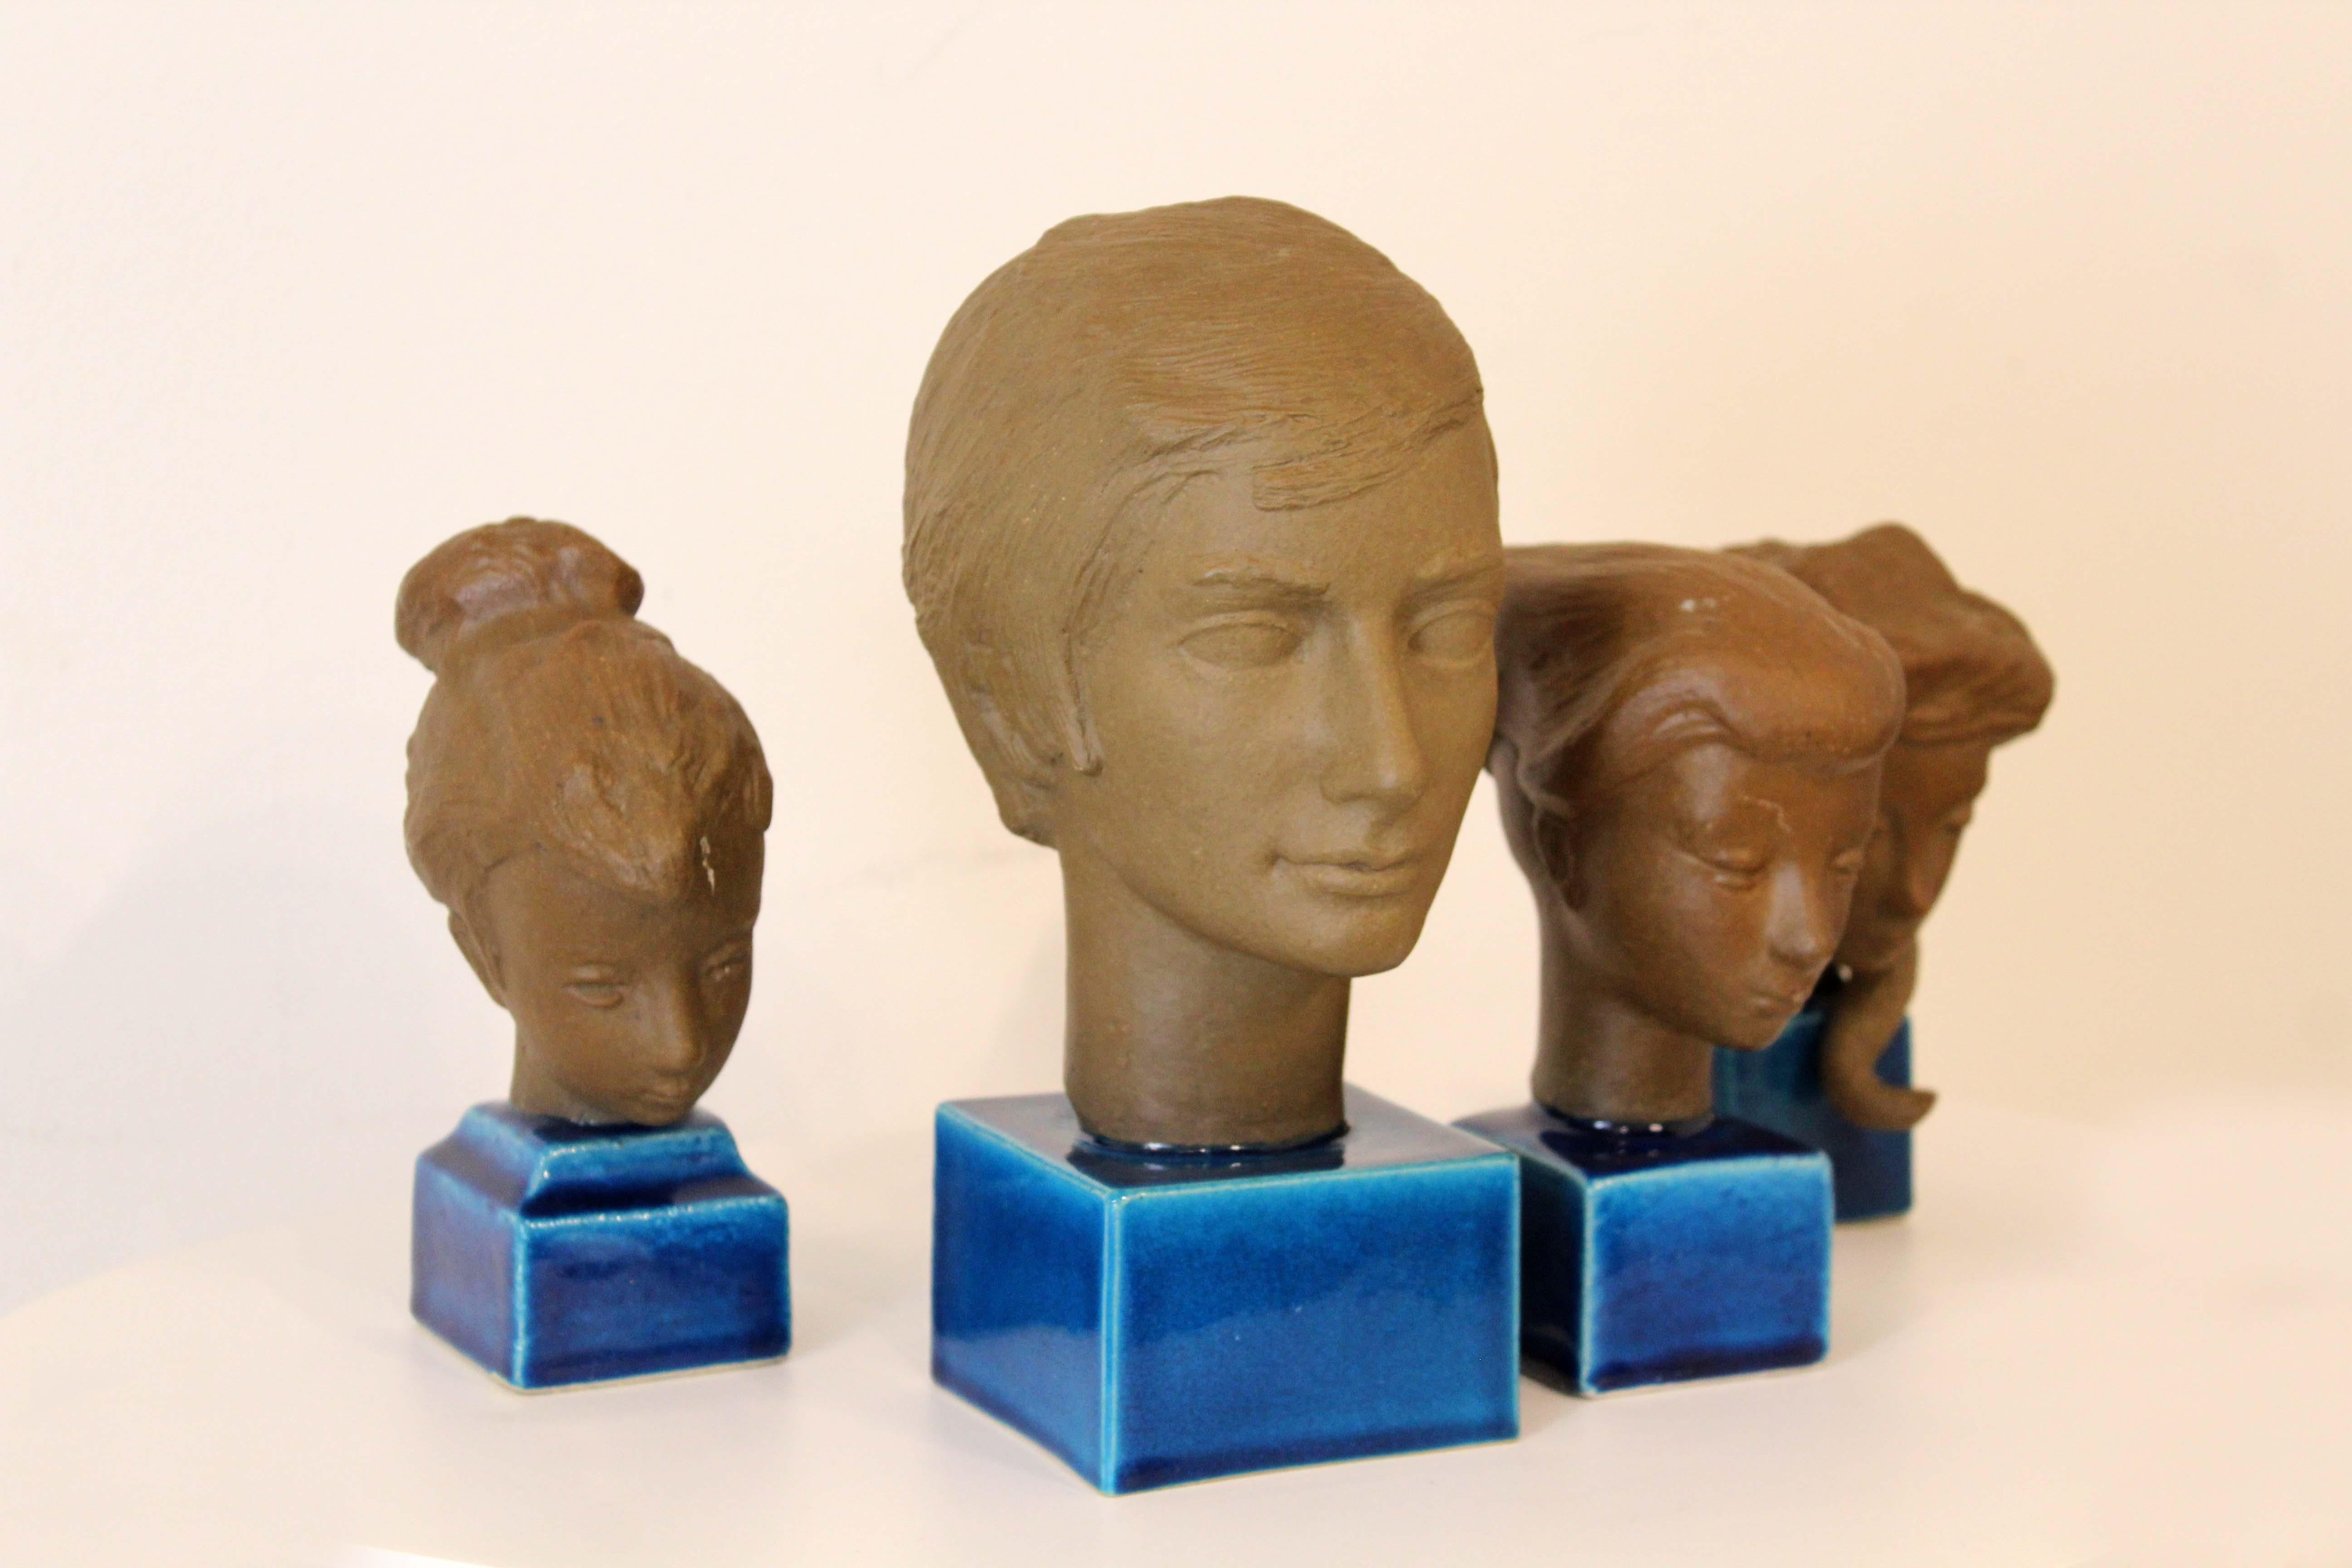 Un ensemble intéressant de 4 bustes en céramique d'inspiration moderne, fabriqués à la main par Johannes Hedegaard pour Royal Copenhagen Danemark. Chaque sculpture est marquée sur le fond de la signature de Hedegaard avec un numéro d'inventaire.